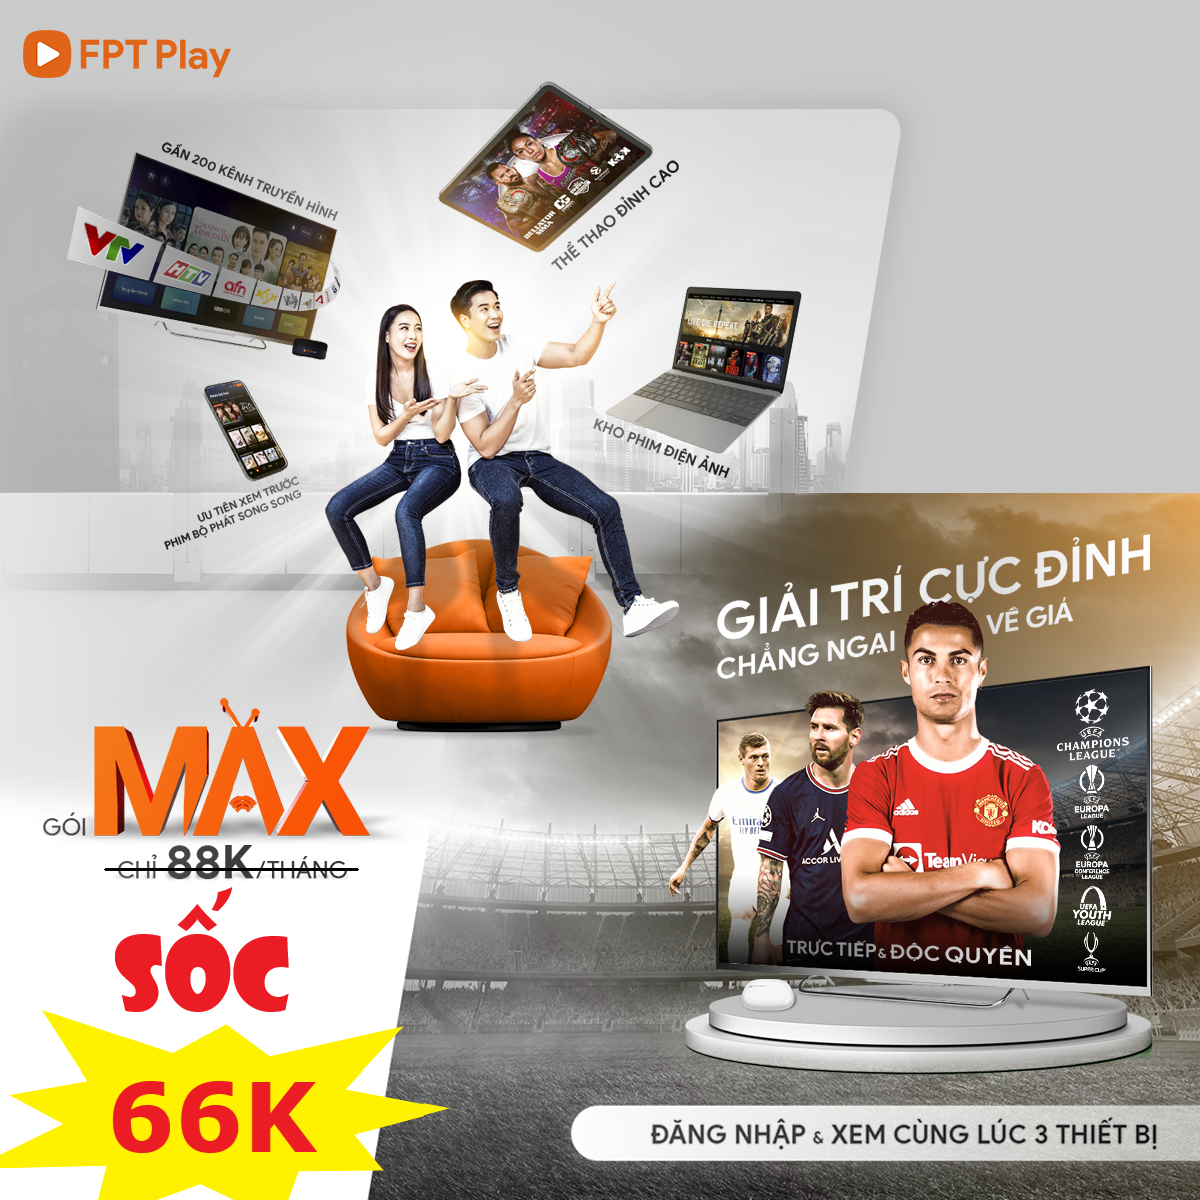 Gói Max FPT Play dịch vụ xem truyền hình chỉ với 88.000đ/tháng 14